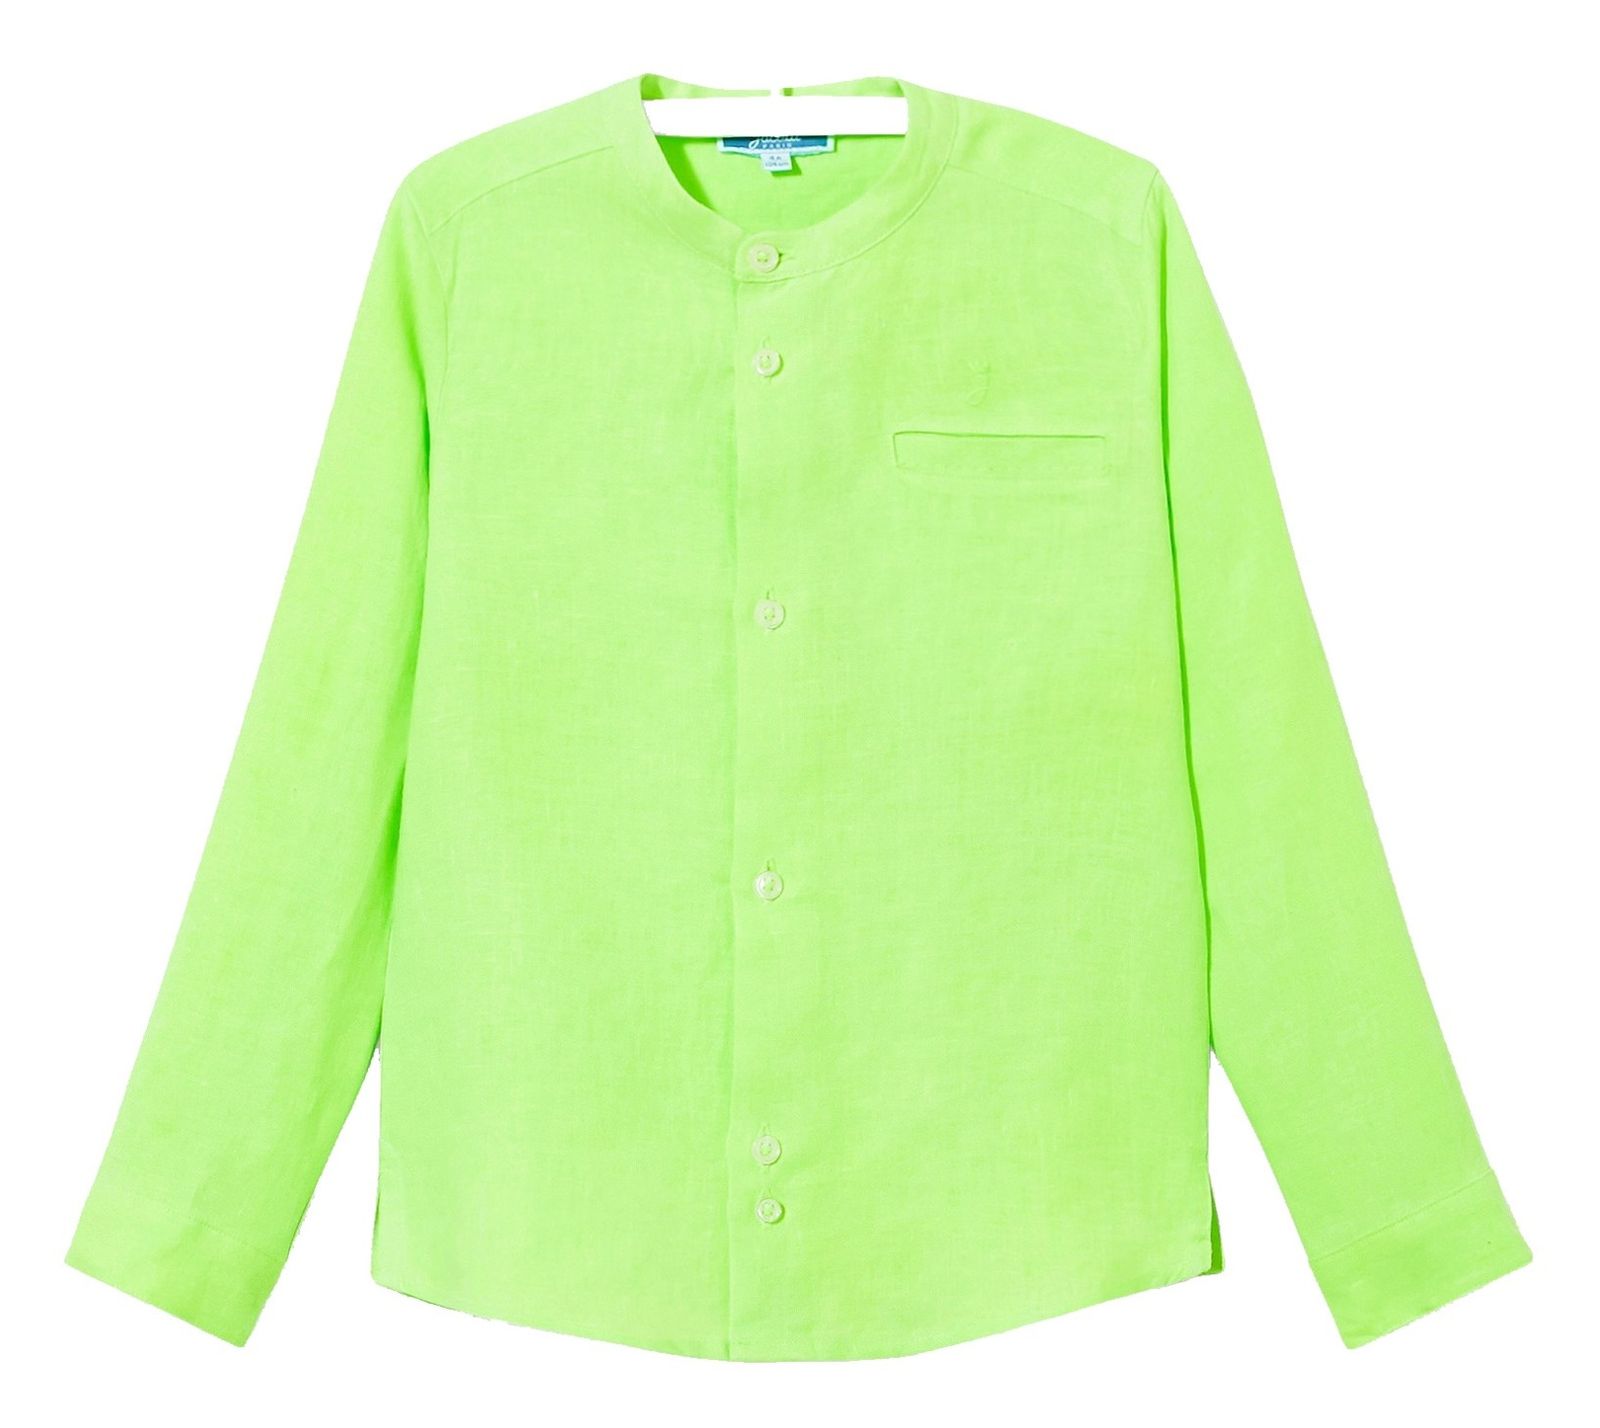 پیراهن کتان آستین بلند پسرانه Eclipsebis - جاکادی - سبز - 2